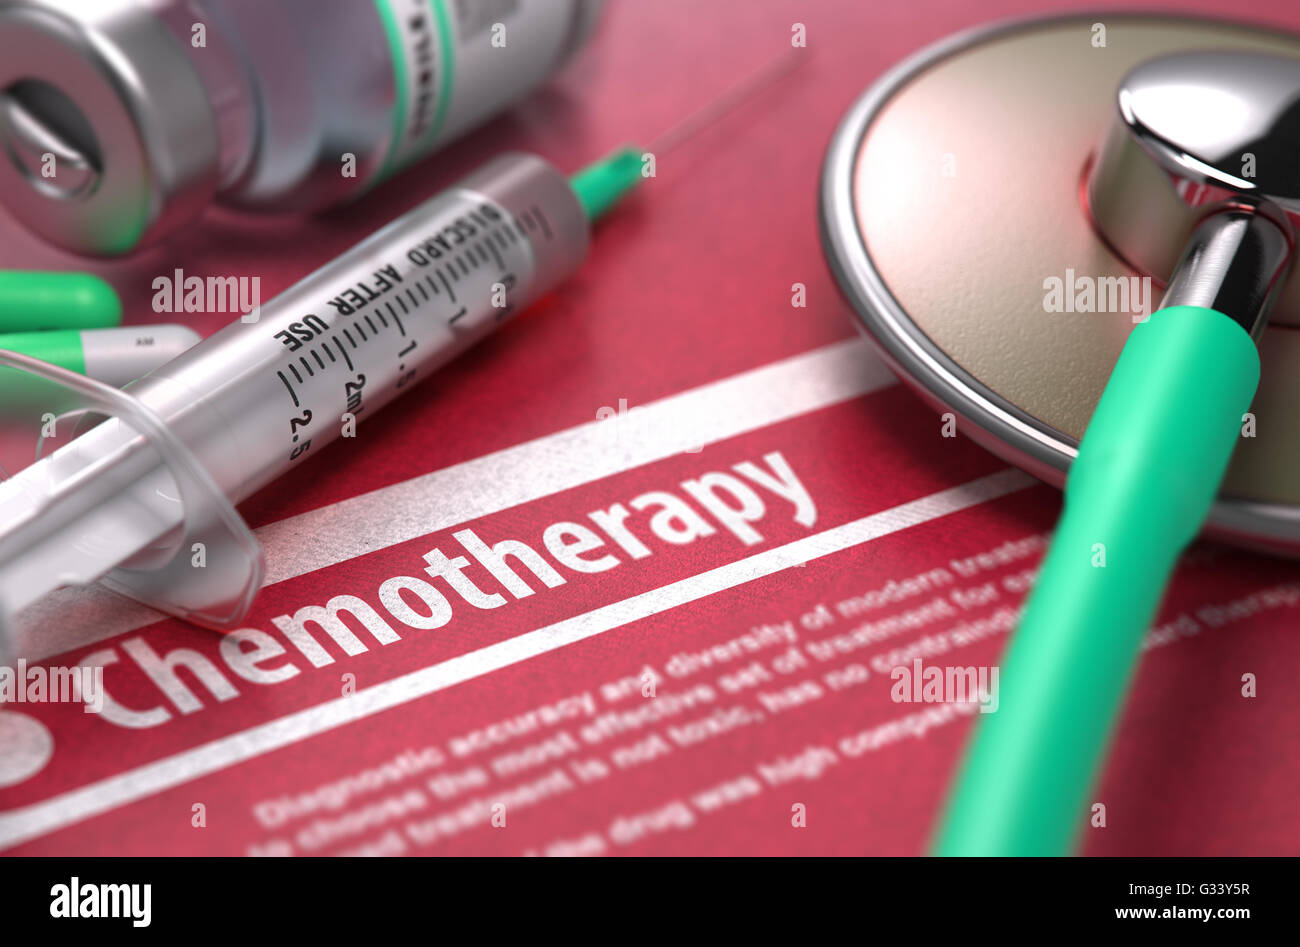 La chimiothérapie - Concept médical sur fond rouge. Banque D'Images